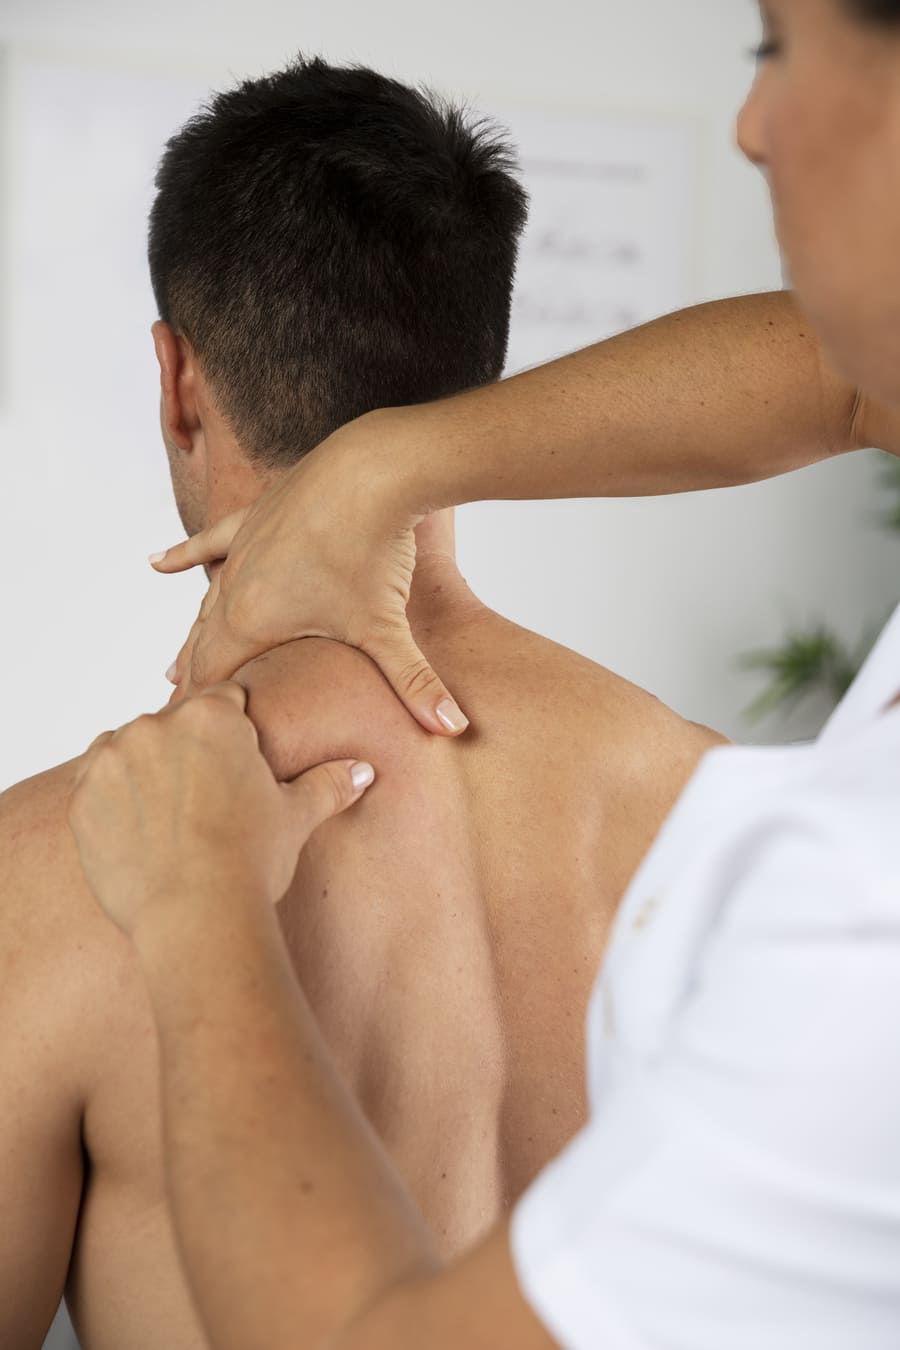 fisioterapeuta realizando masaje terapéutico paciente masculino